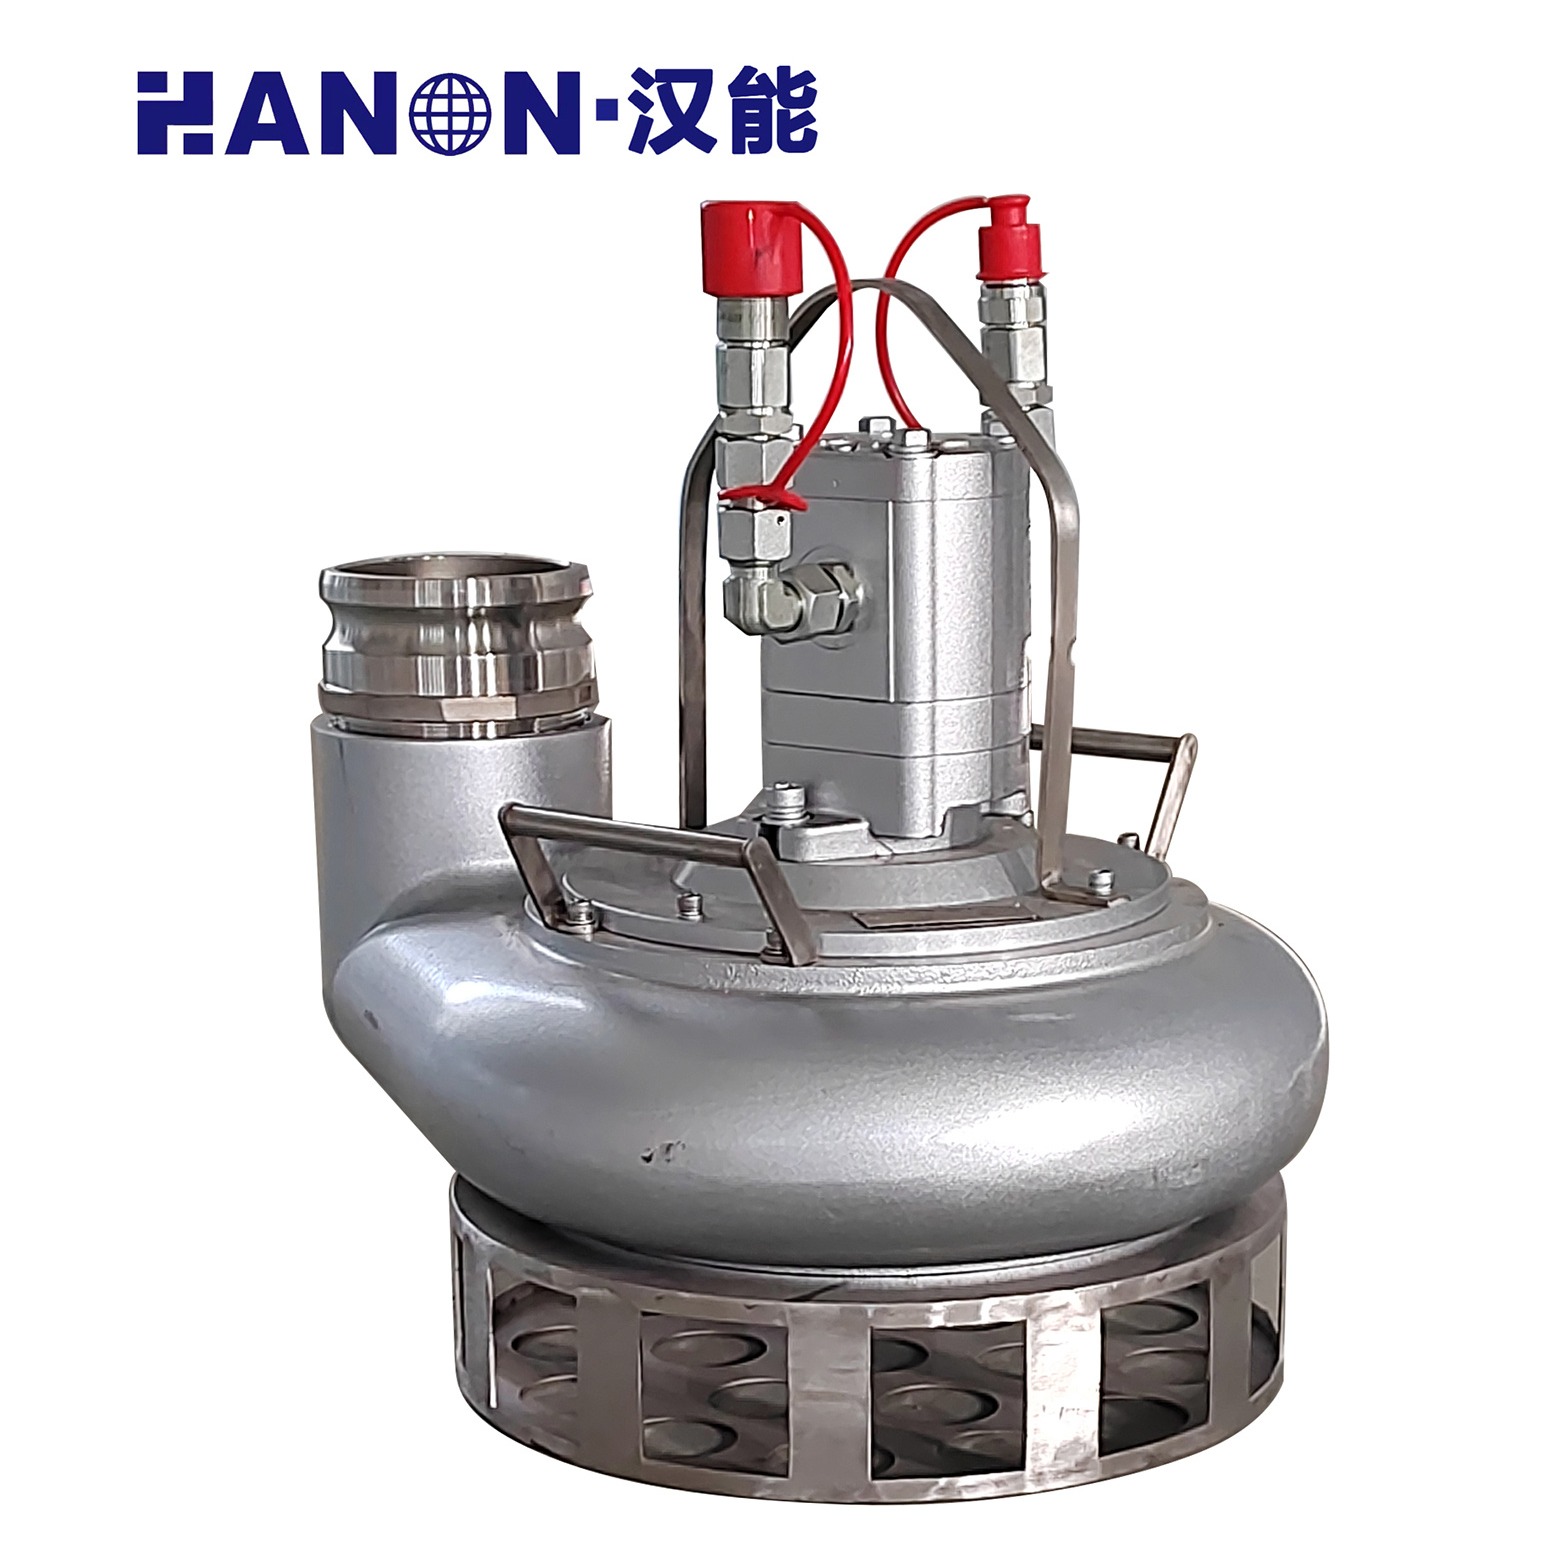 汉能 YZJ系列渣浆泵 便携式潜水泵 排涝泵 液压驱动 操作安全